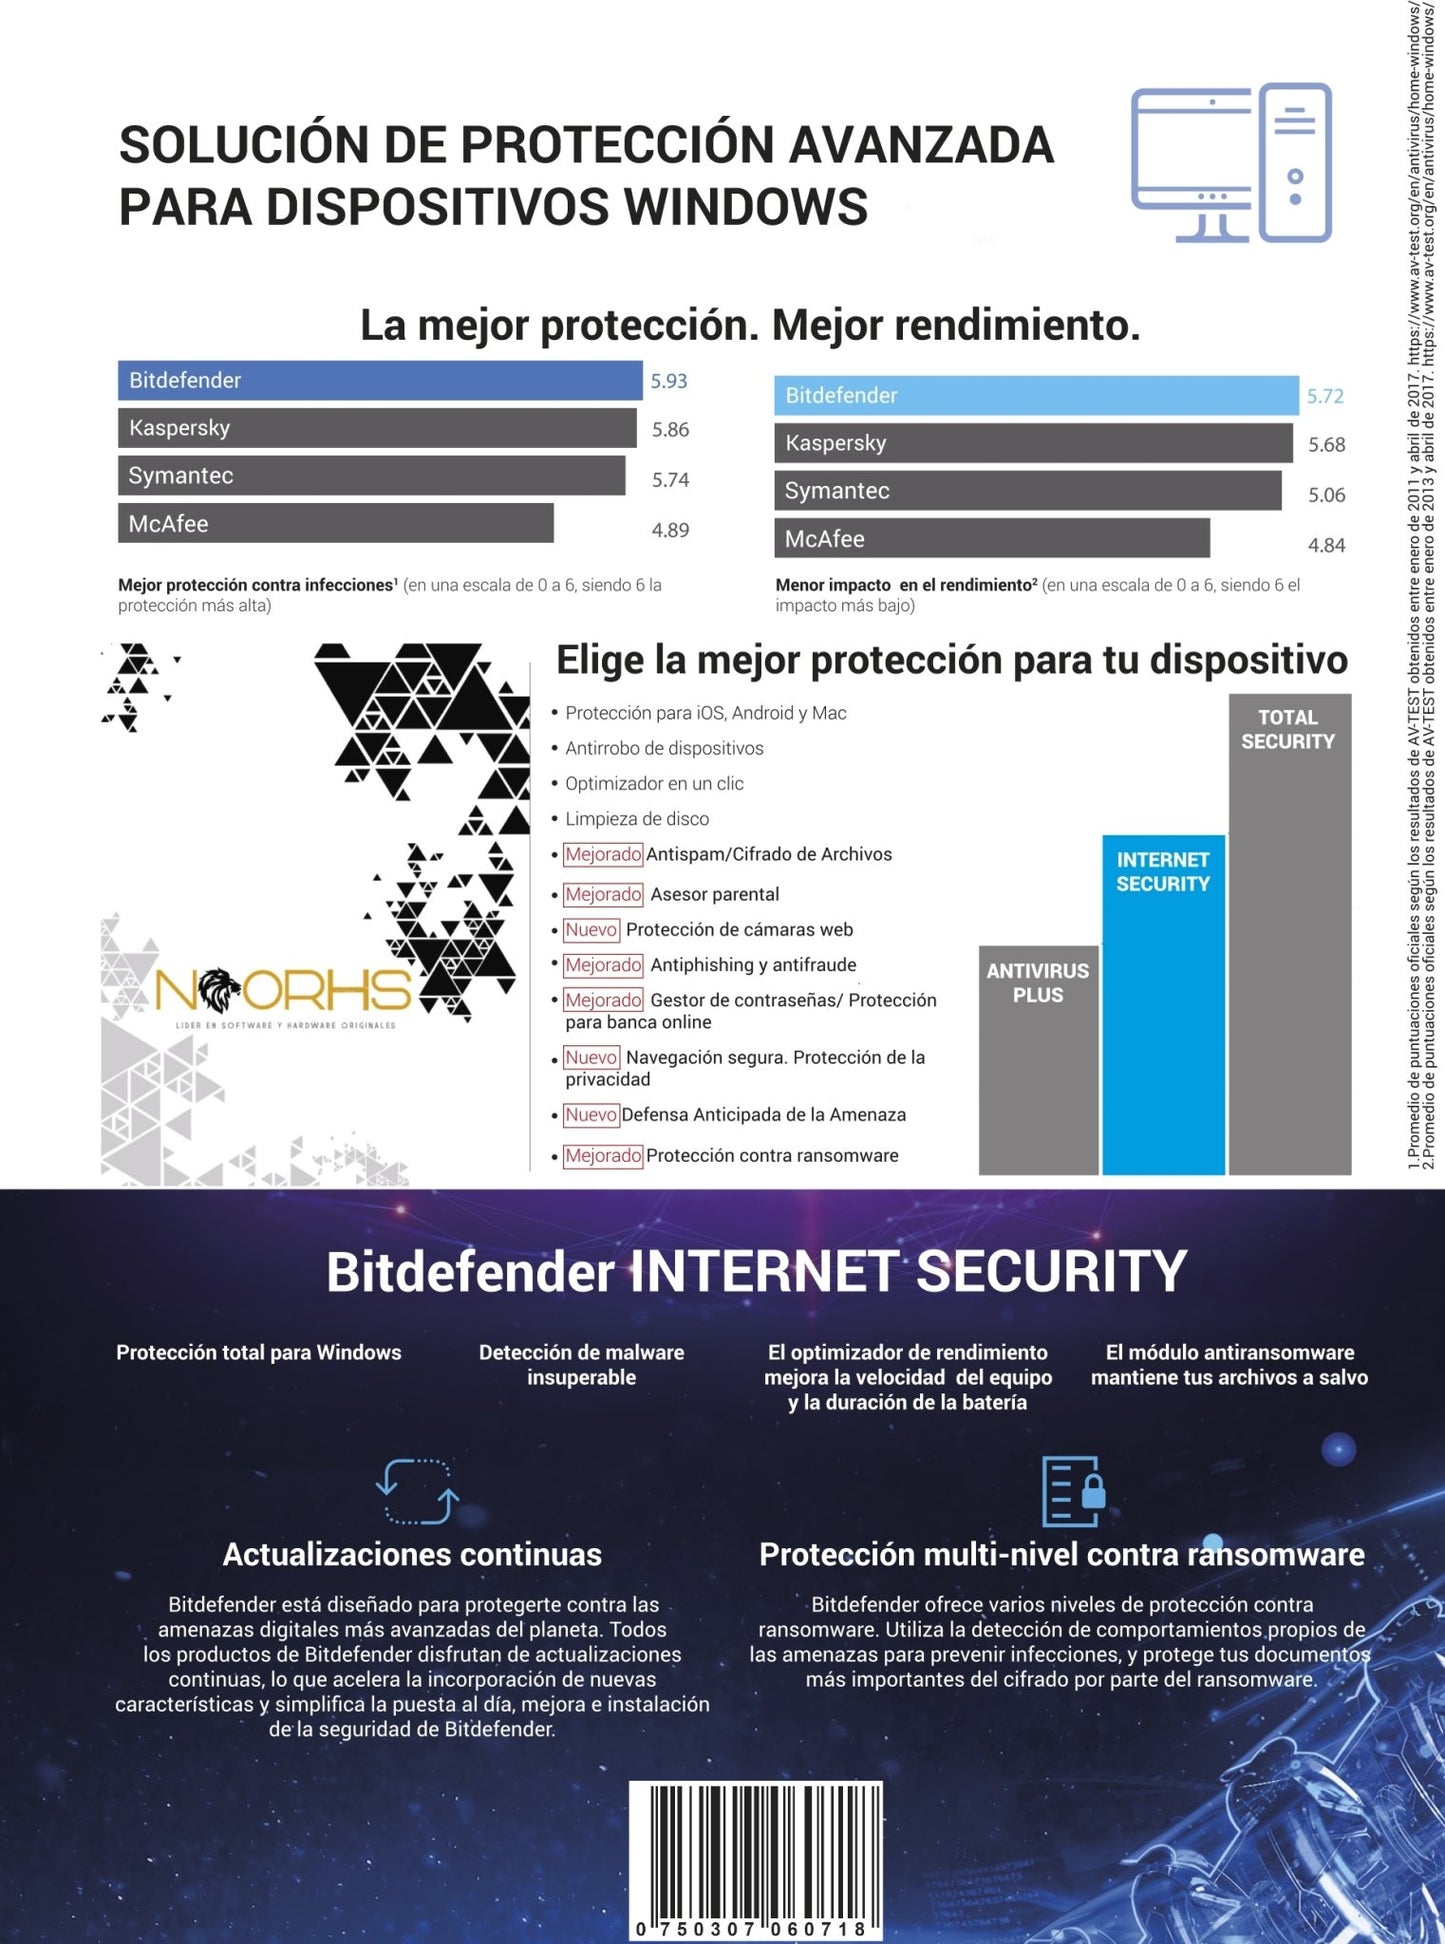 Bitdefender Internet Security 3 AÑOS - NOORHS Latinoamérica, S.A. de C.V.